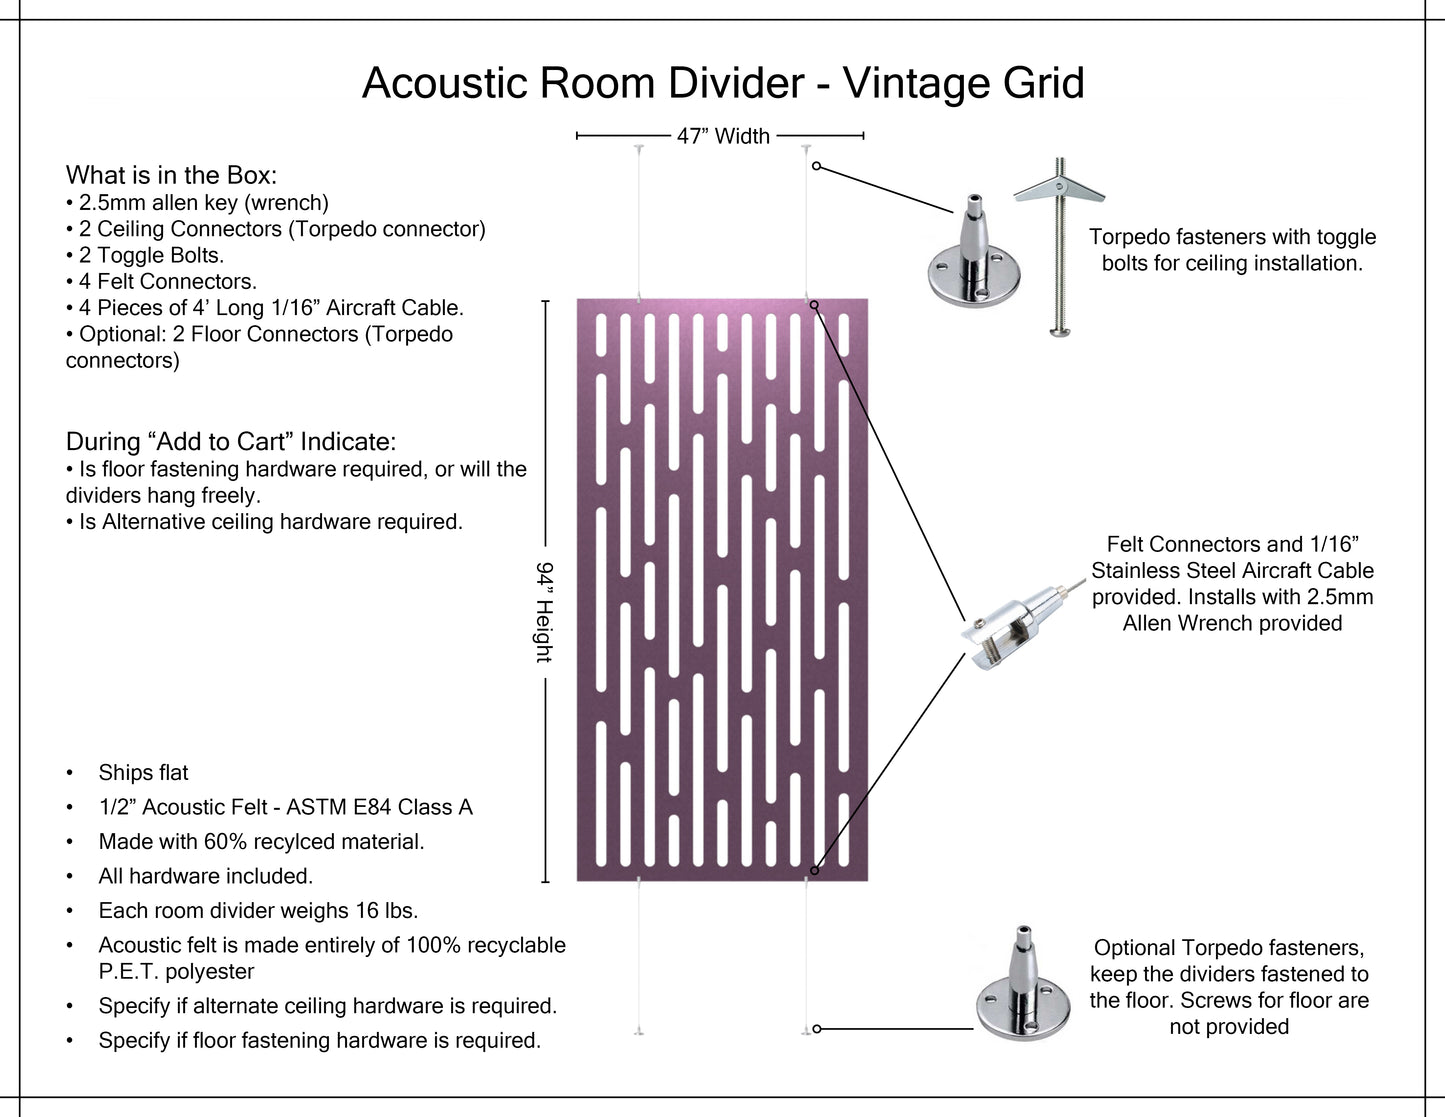 4x8 Acoustic Room Divider - Vintage Grid